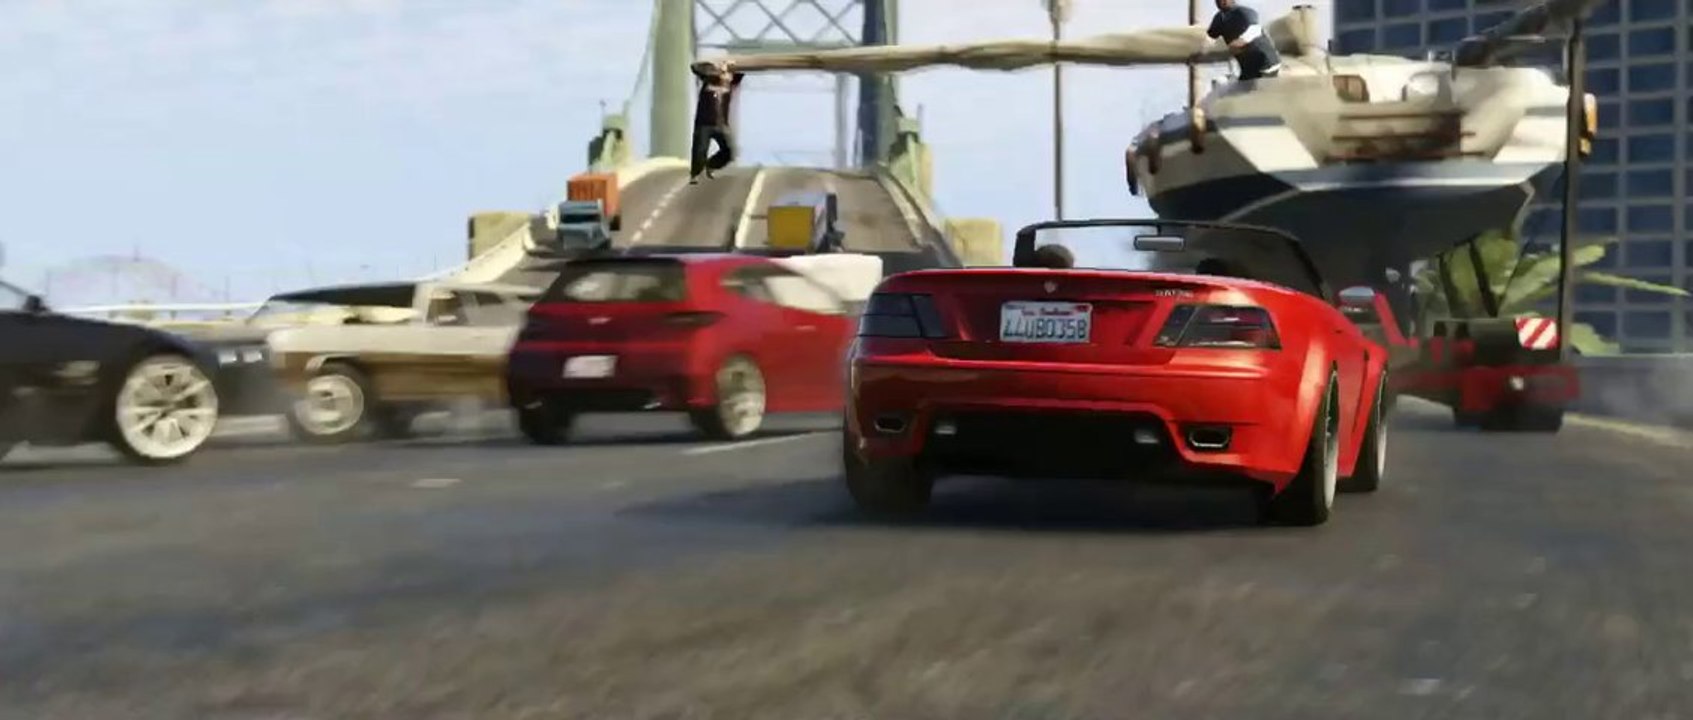 Grand Theft Auto V (GTA V)-new official Trailer #2